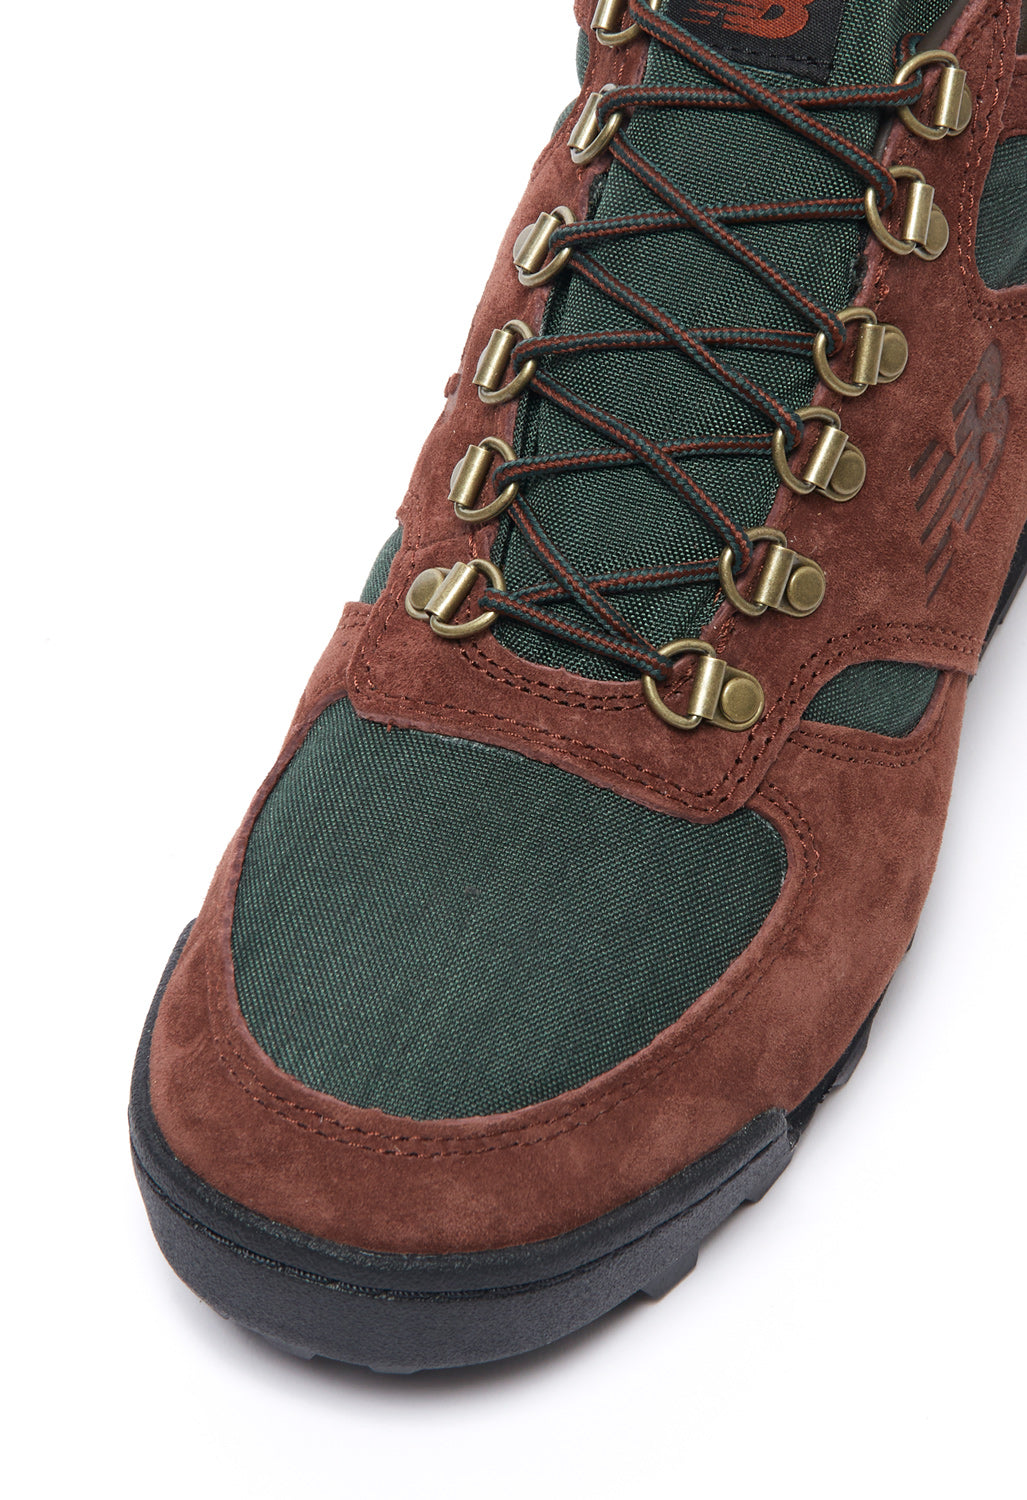 New Balance Rainier Boots - Rich Oak